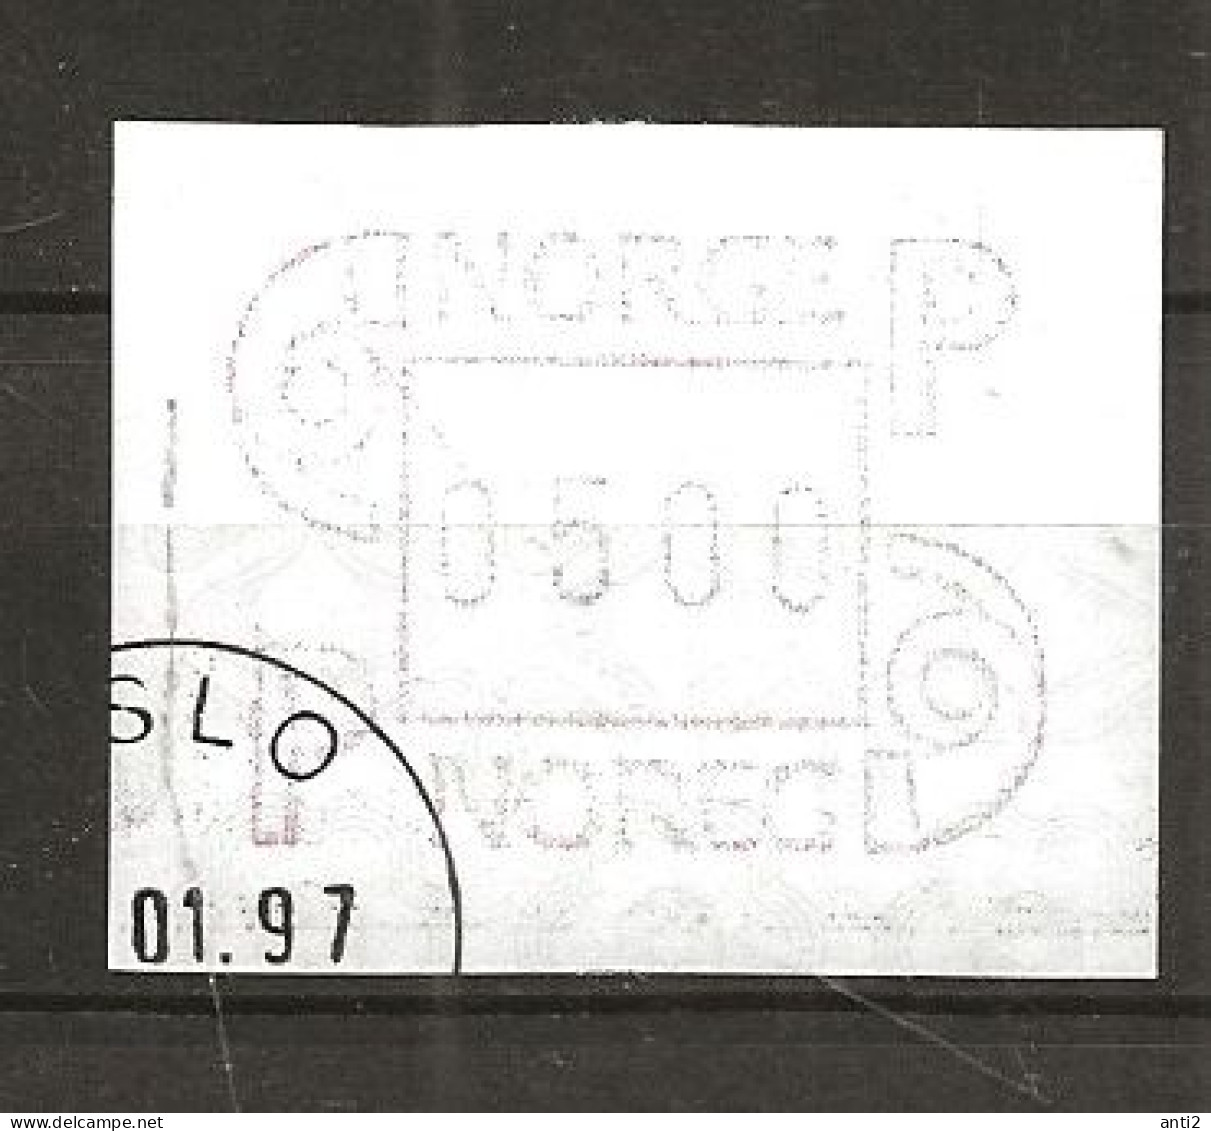 Norway 1997 ATM - Machine Label  NOK 5.00 - Vendel Machine Stamp Mi 3   - Cancelledn January 97 - Automatenmarken [ATM]